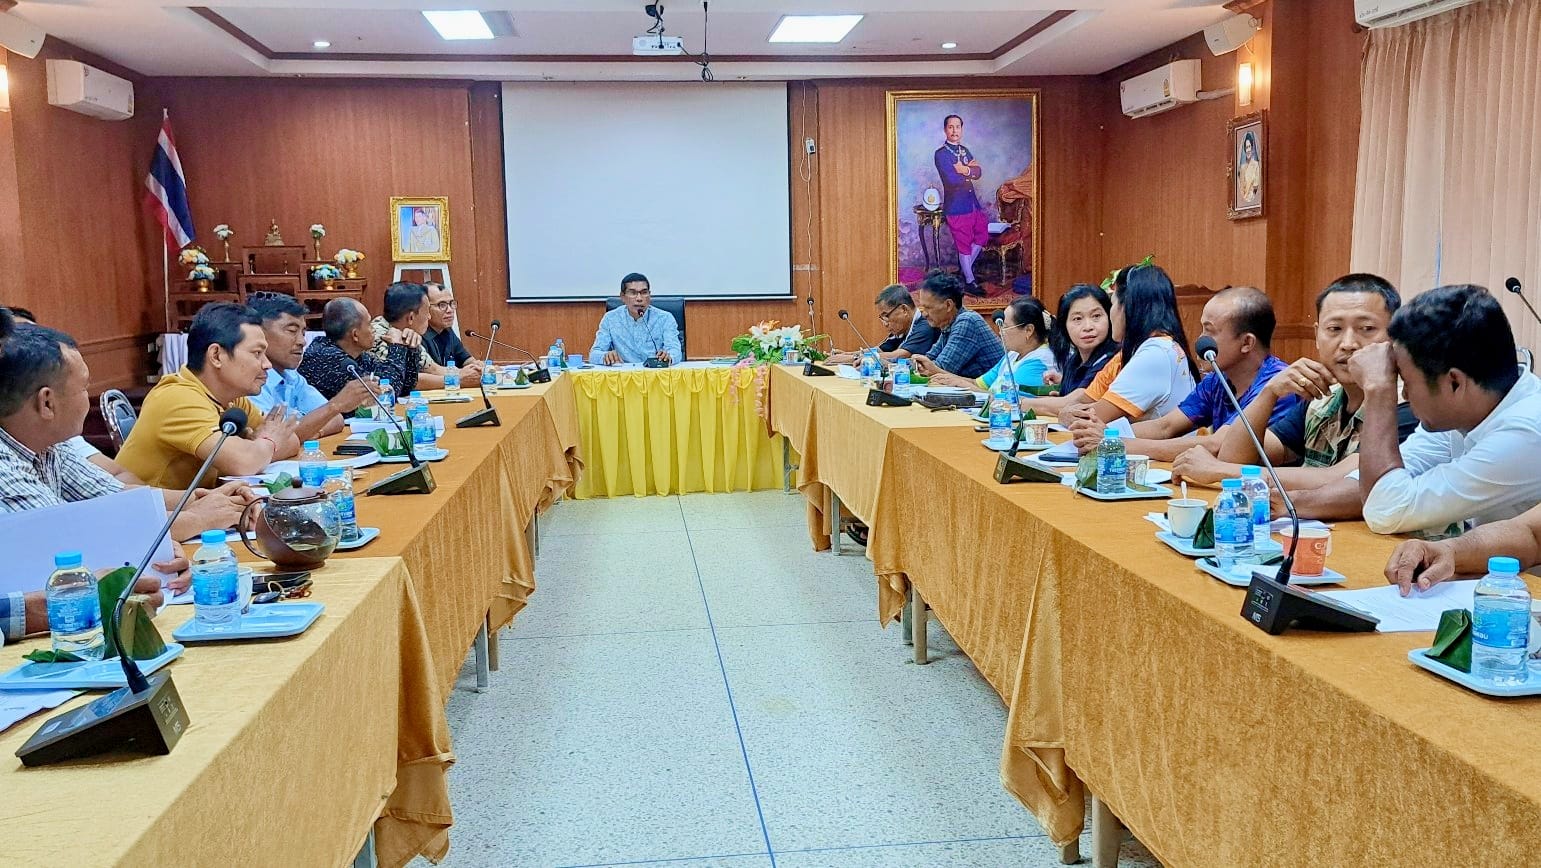 ประชุมปรึกษาหารือ การกำหนดรูปแบบงาน
ตามโครงการจัดงานวันลอยกระทงสืบสานประเพณีไทย